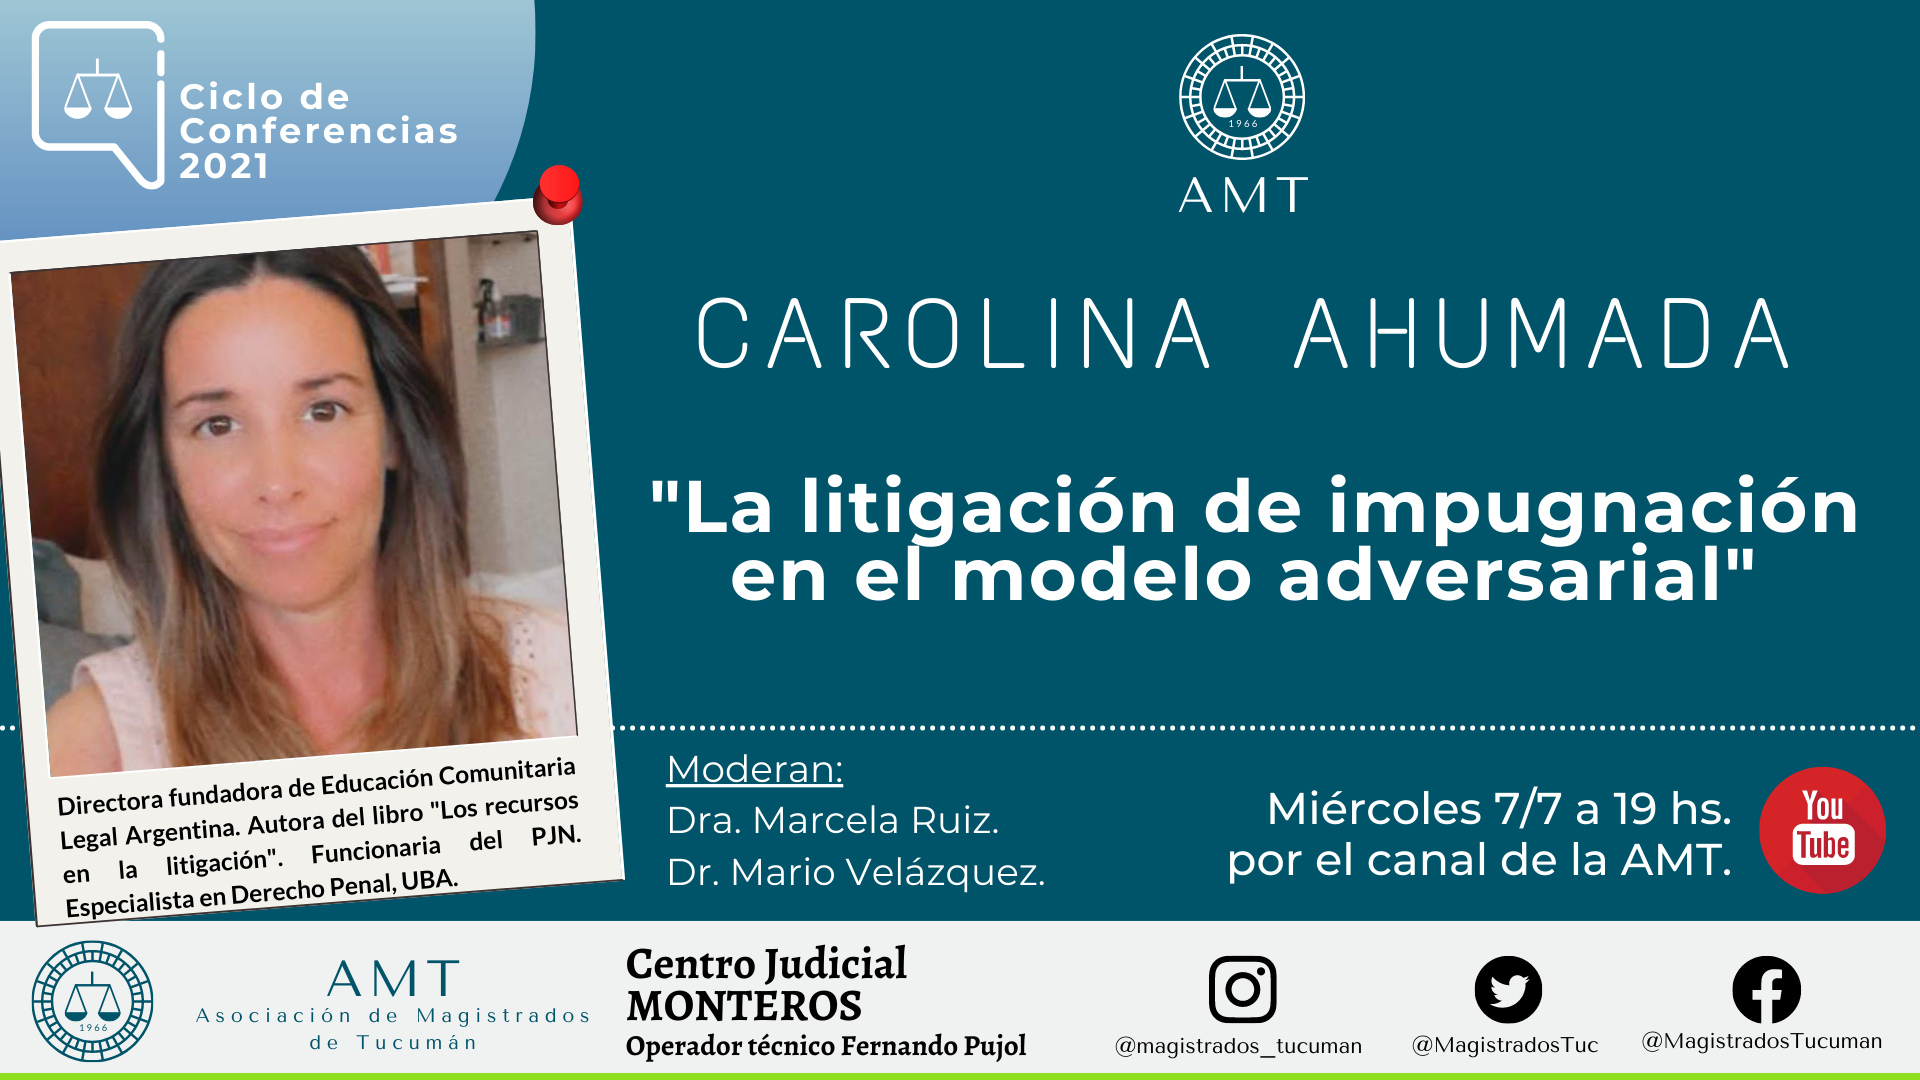 Vuelva a ver la conferencia de Carolina Ahumada «La litigación de impugnación en el modelo adversarial»